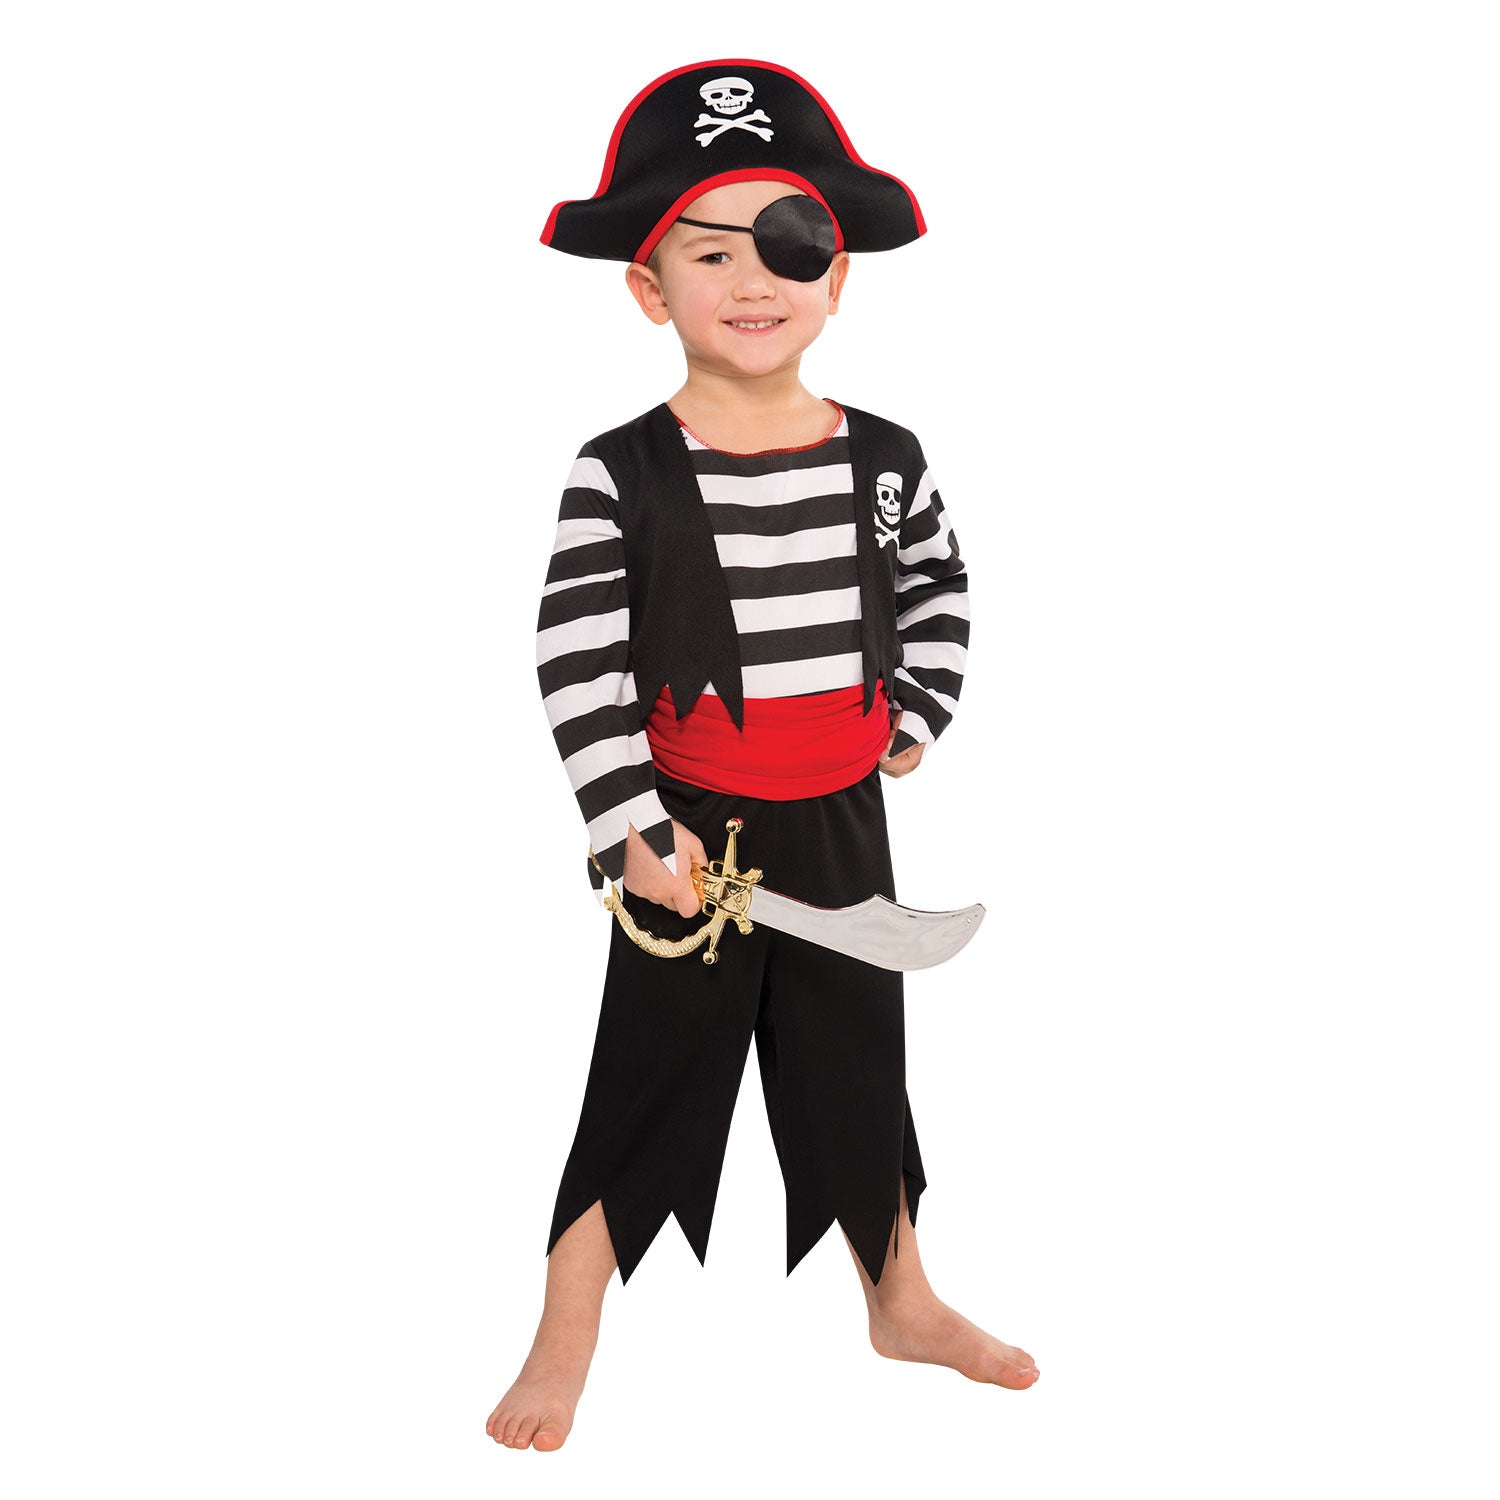 Deckhand Pirate